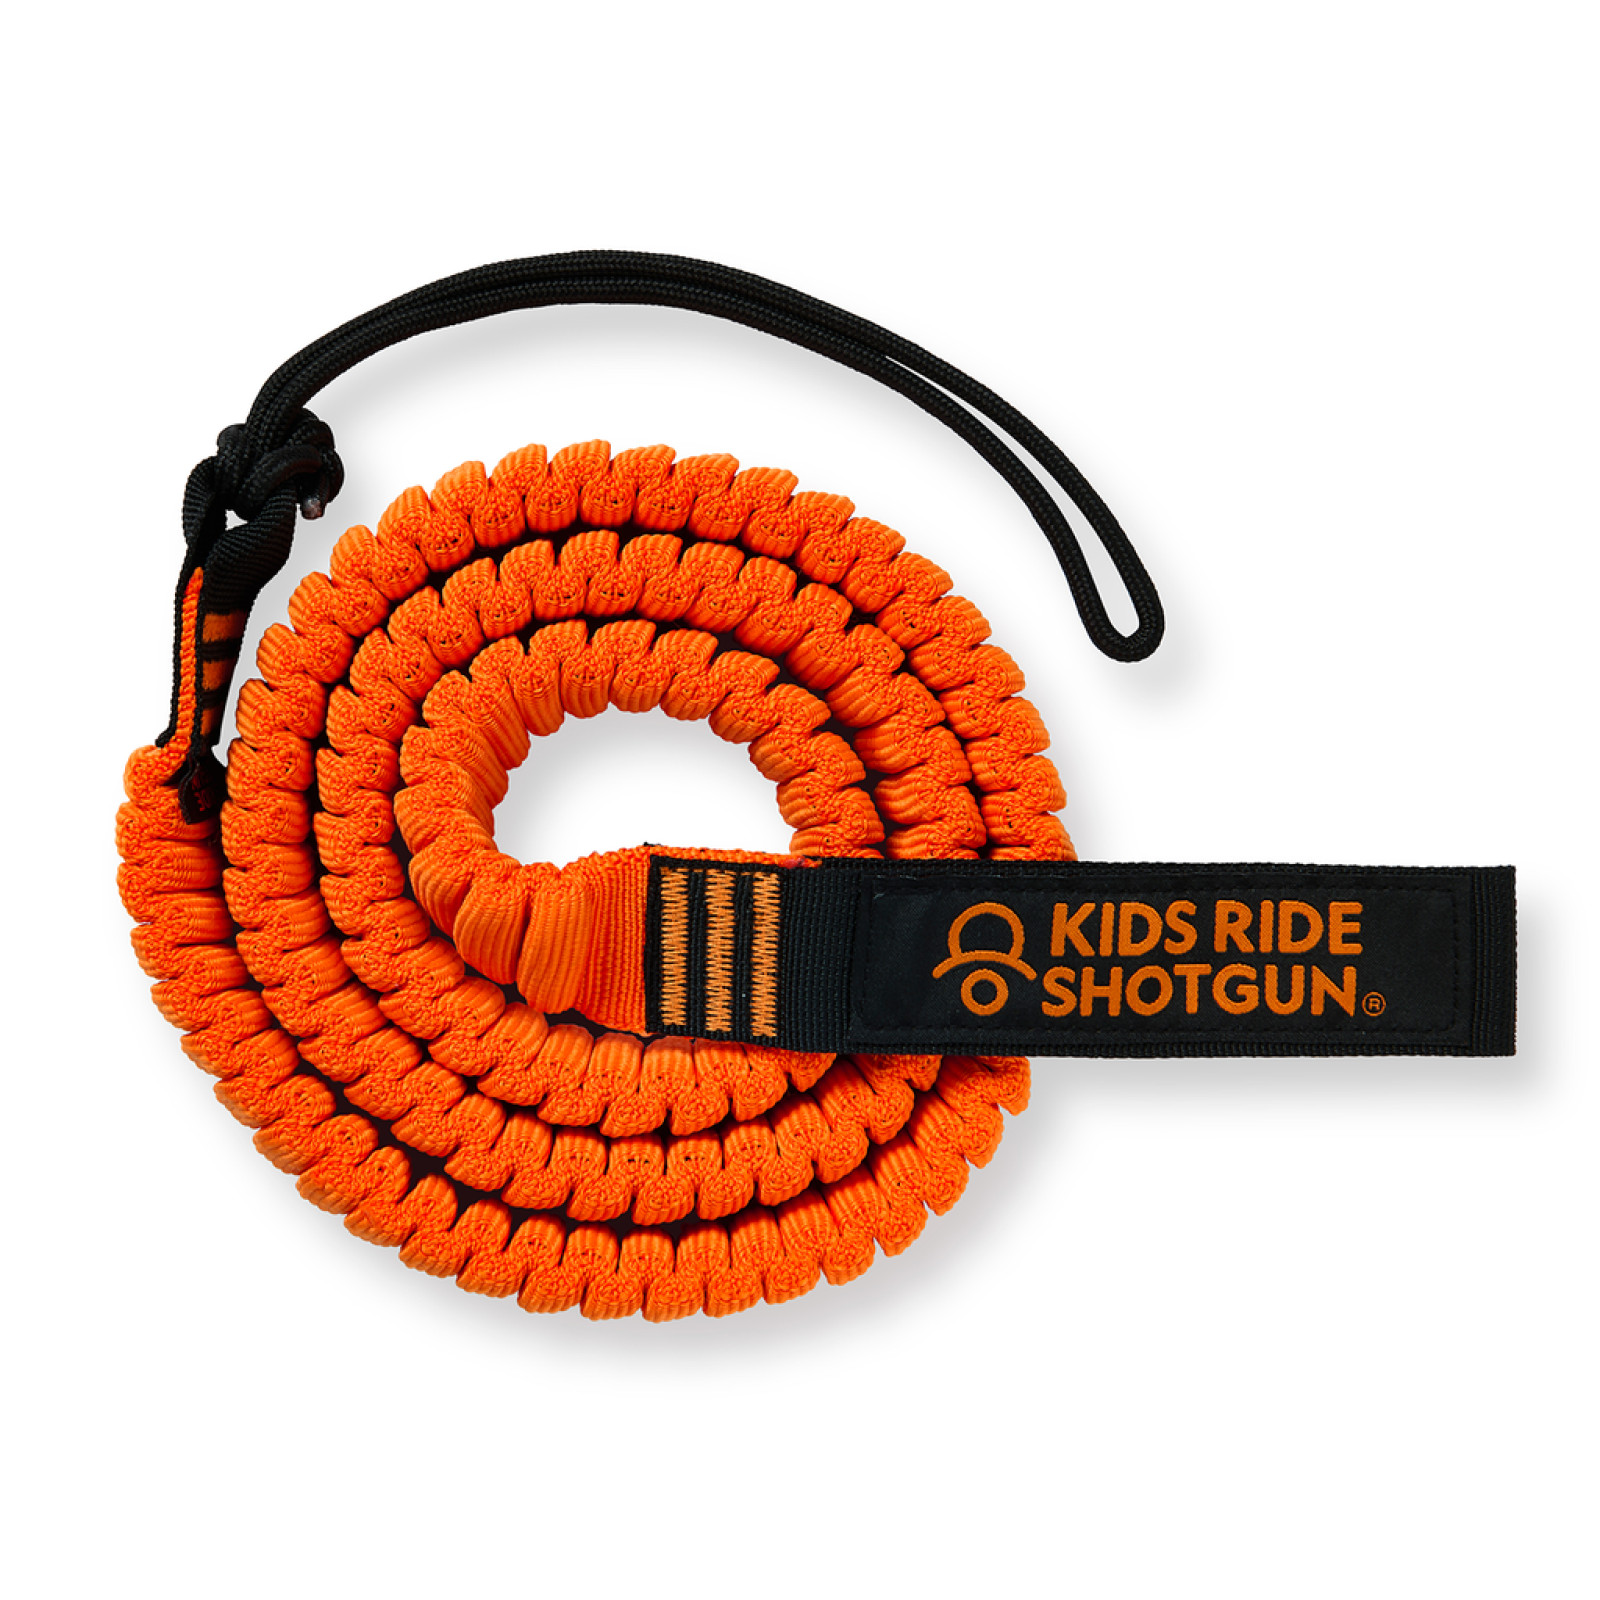 Helme + Velozubehör: Abschleppseil Shotgun MTB, Tow Rope orange